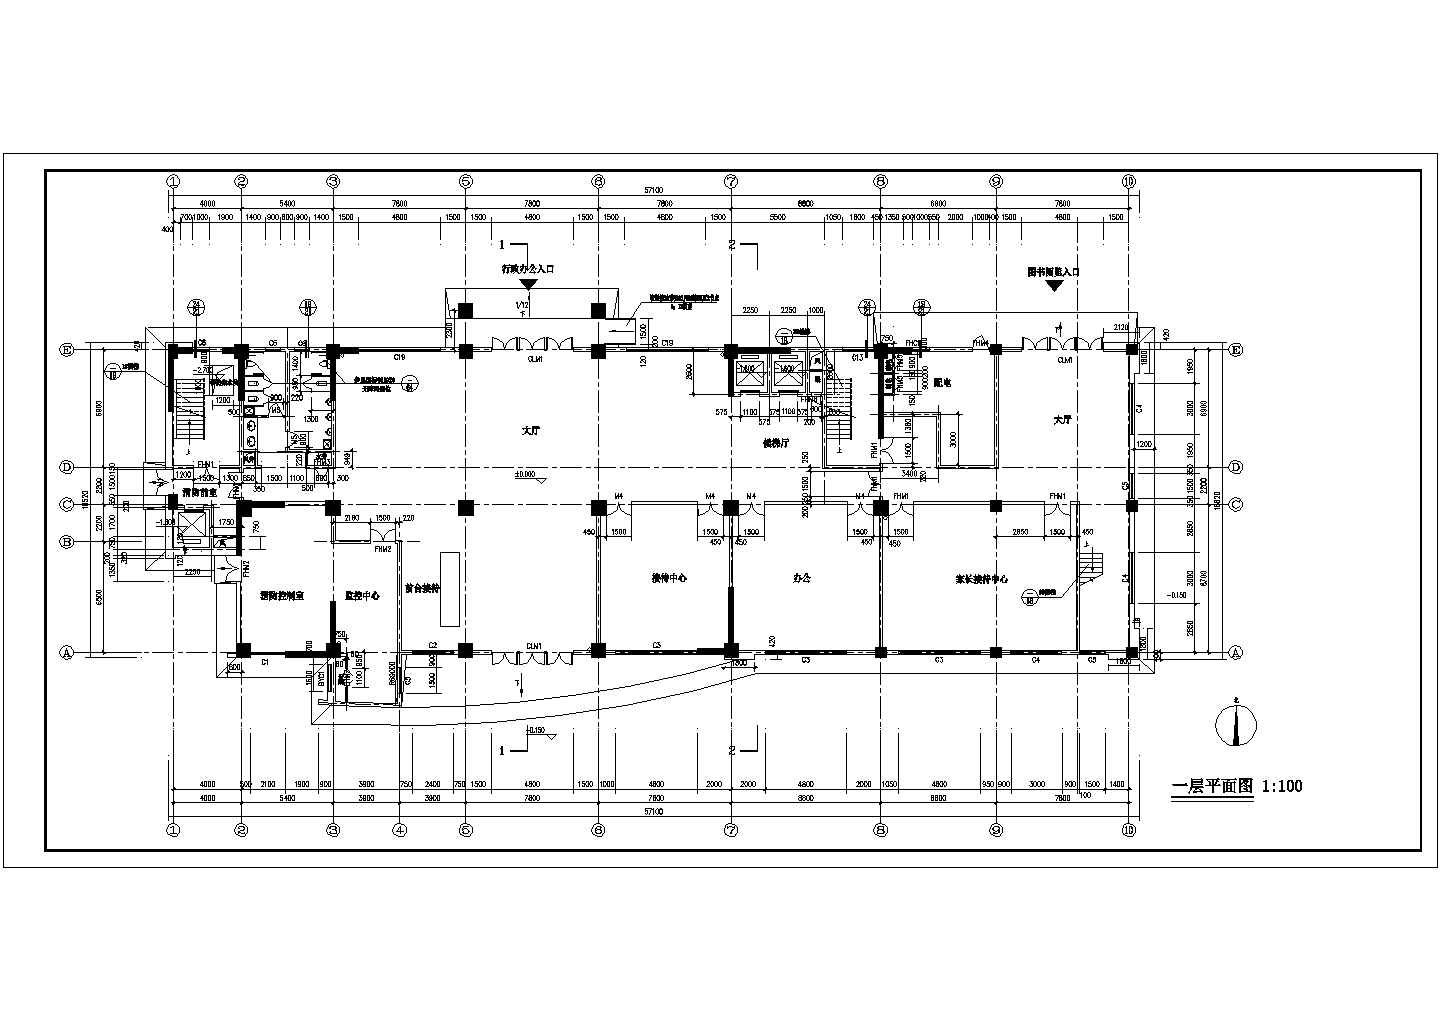 【合肥】15层框架剪力墙结构学校图书馆建筑设计施工图